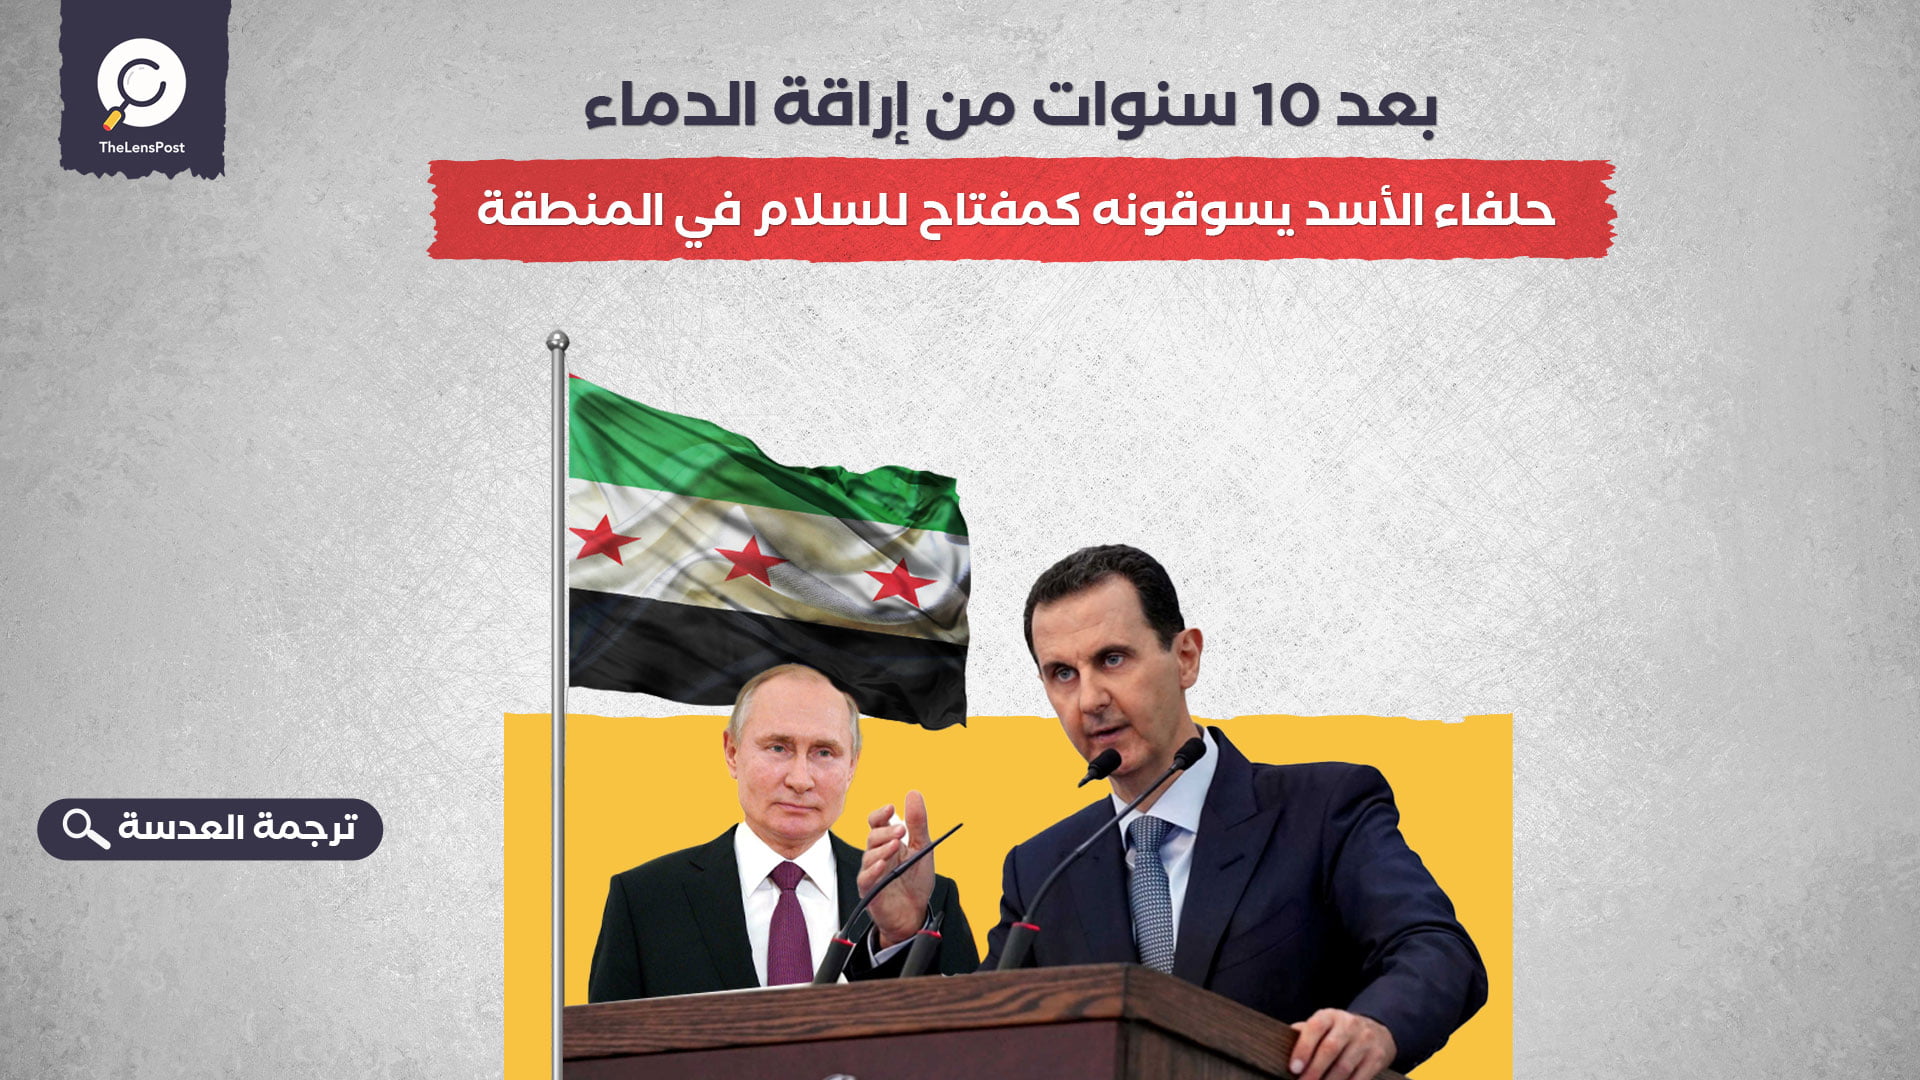 بعد 10 سنوات من إراقة الدماء... حلفاء الأسد يسوقونه كمفتاح للسلام في المنطقة